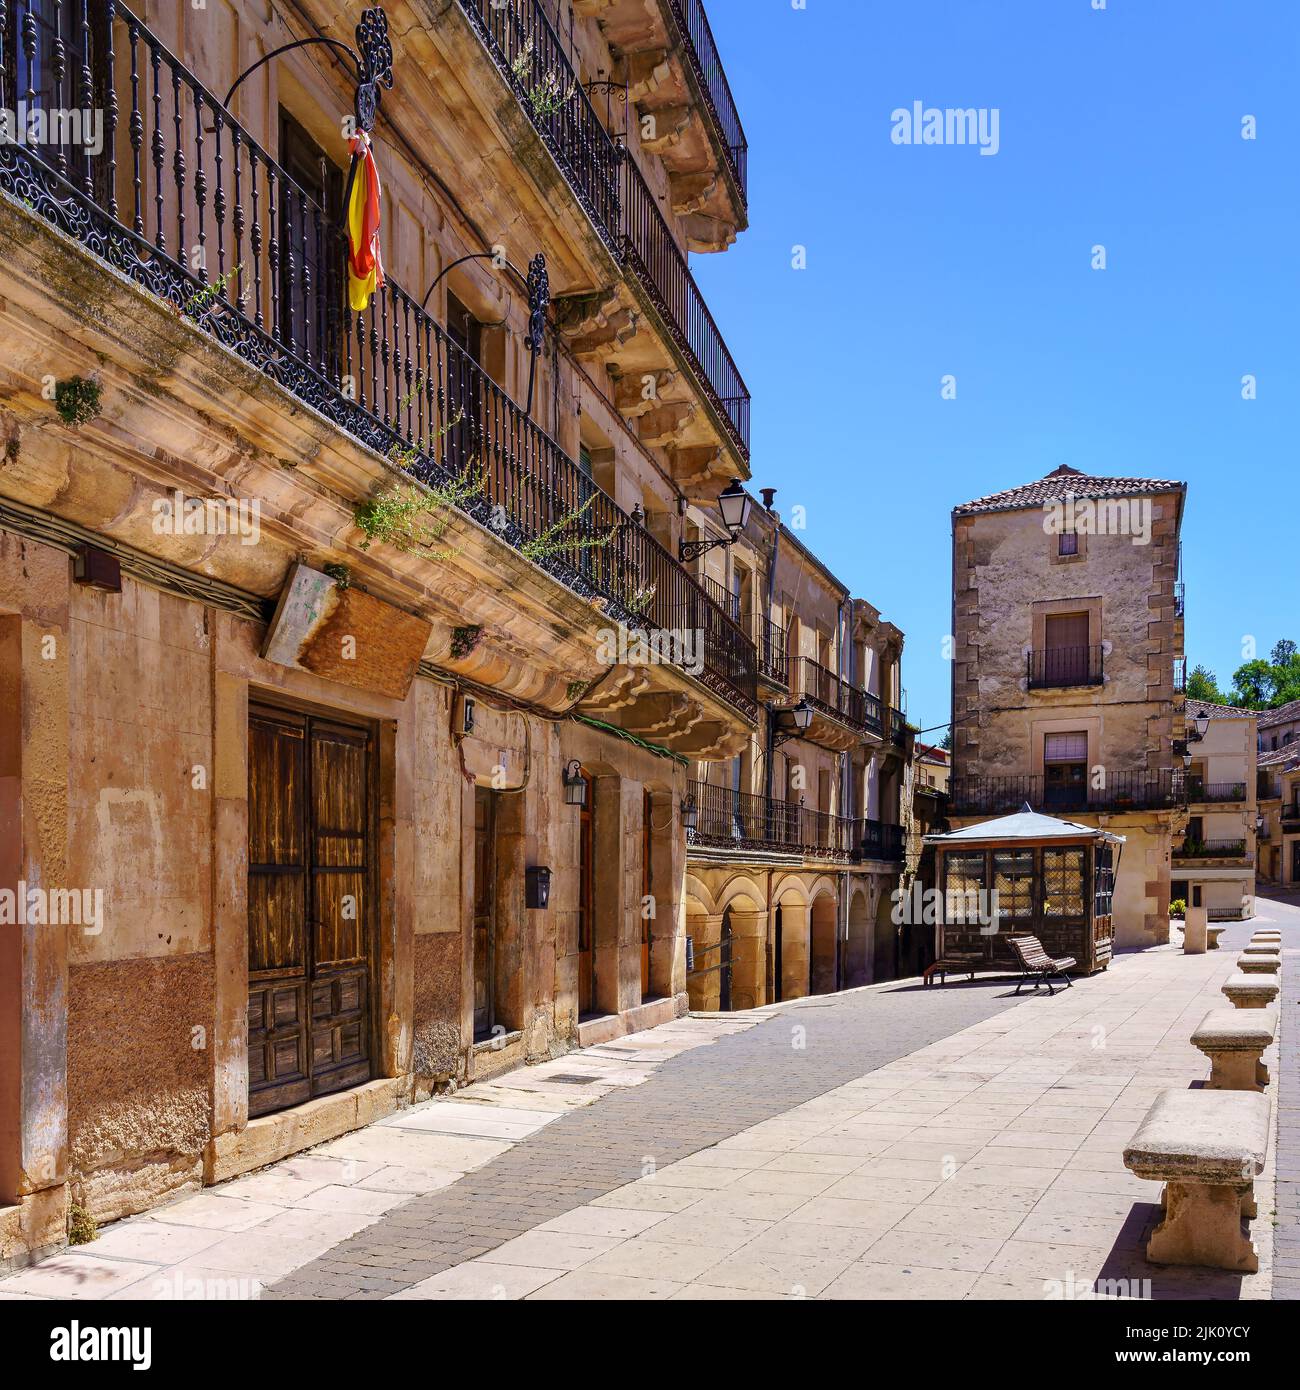 Vecchio edificio in pietra in una città vecchia con ringhiere in ferro balconi. Sepulveda, Segovia Spagna. Foto Stock